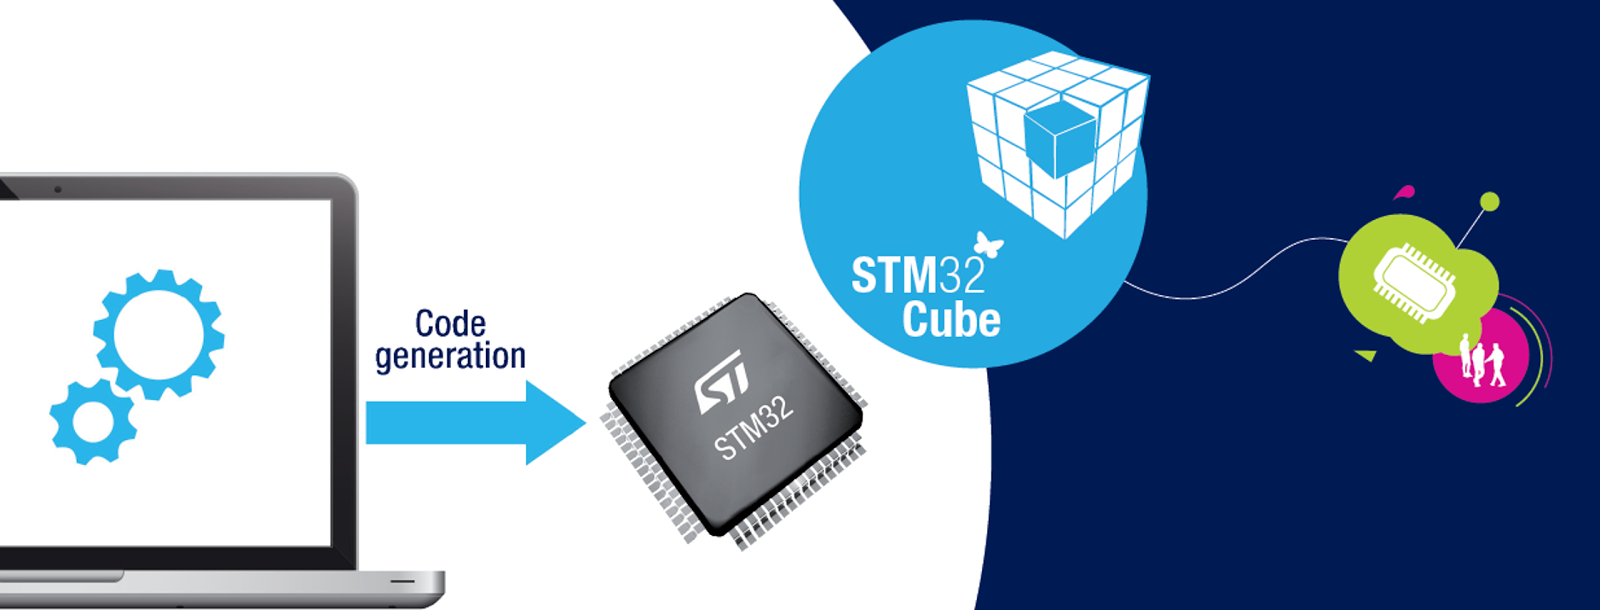 Stm cube. Stm32 Cube. STM логотип. Stm32 logo. Stm32 Cube ide.